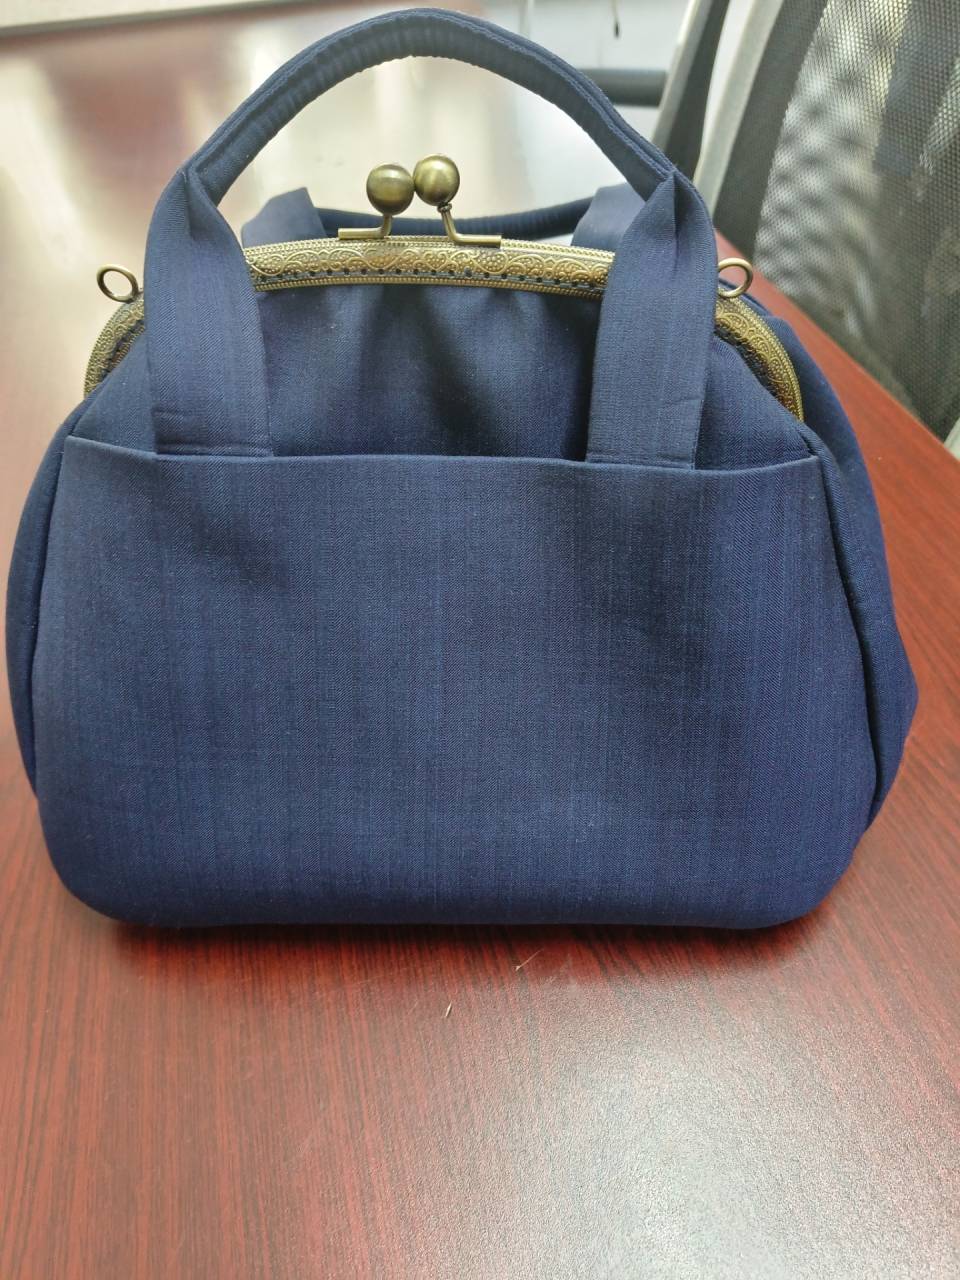 鞄、バッグの小ロット。オリジナル商品、OEM生産です。